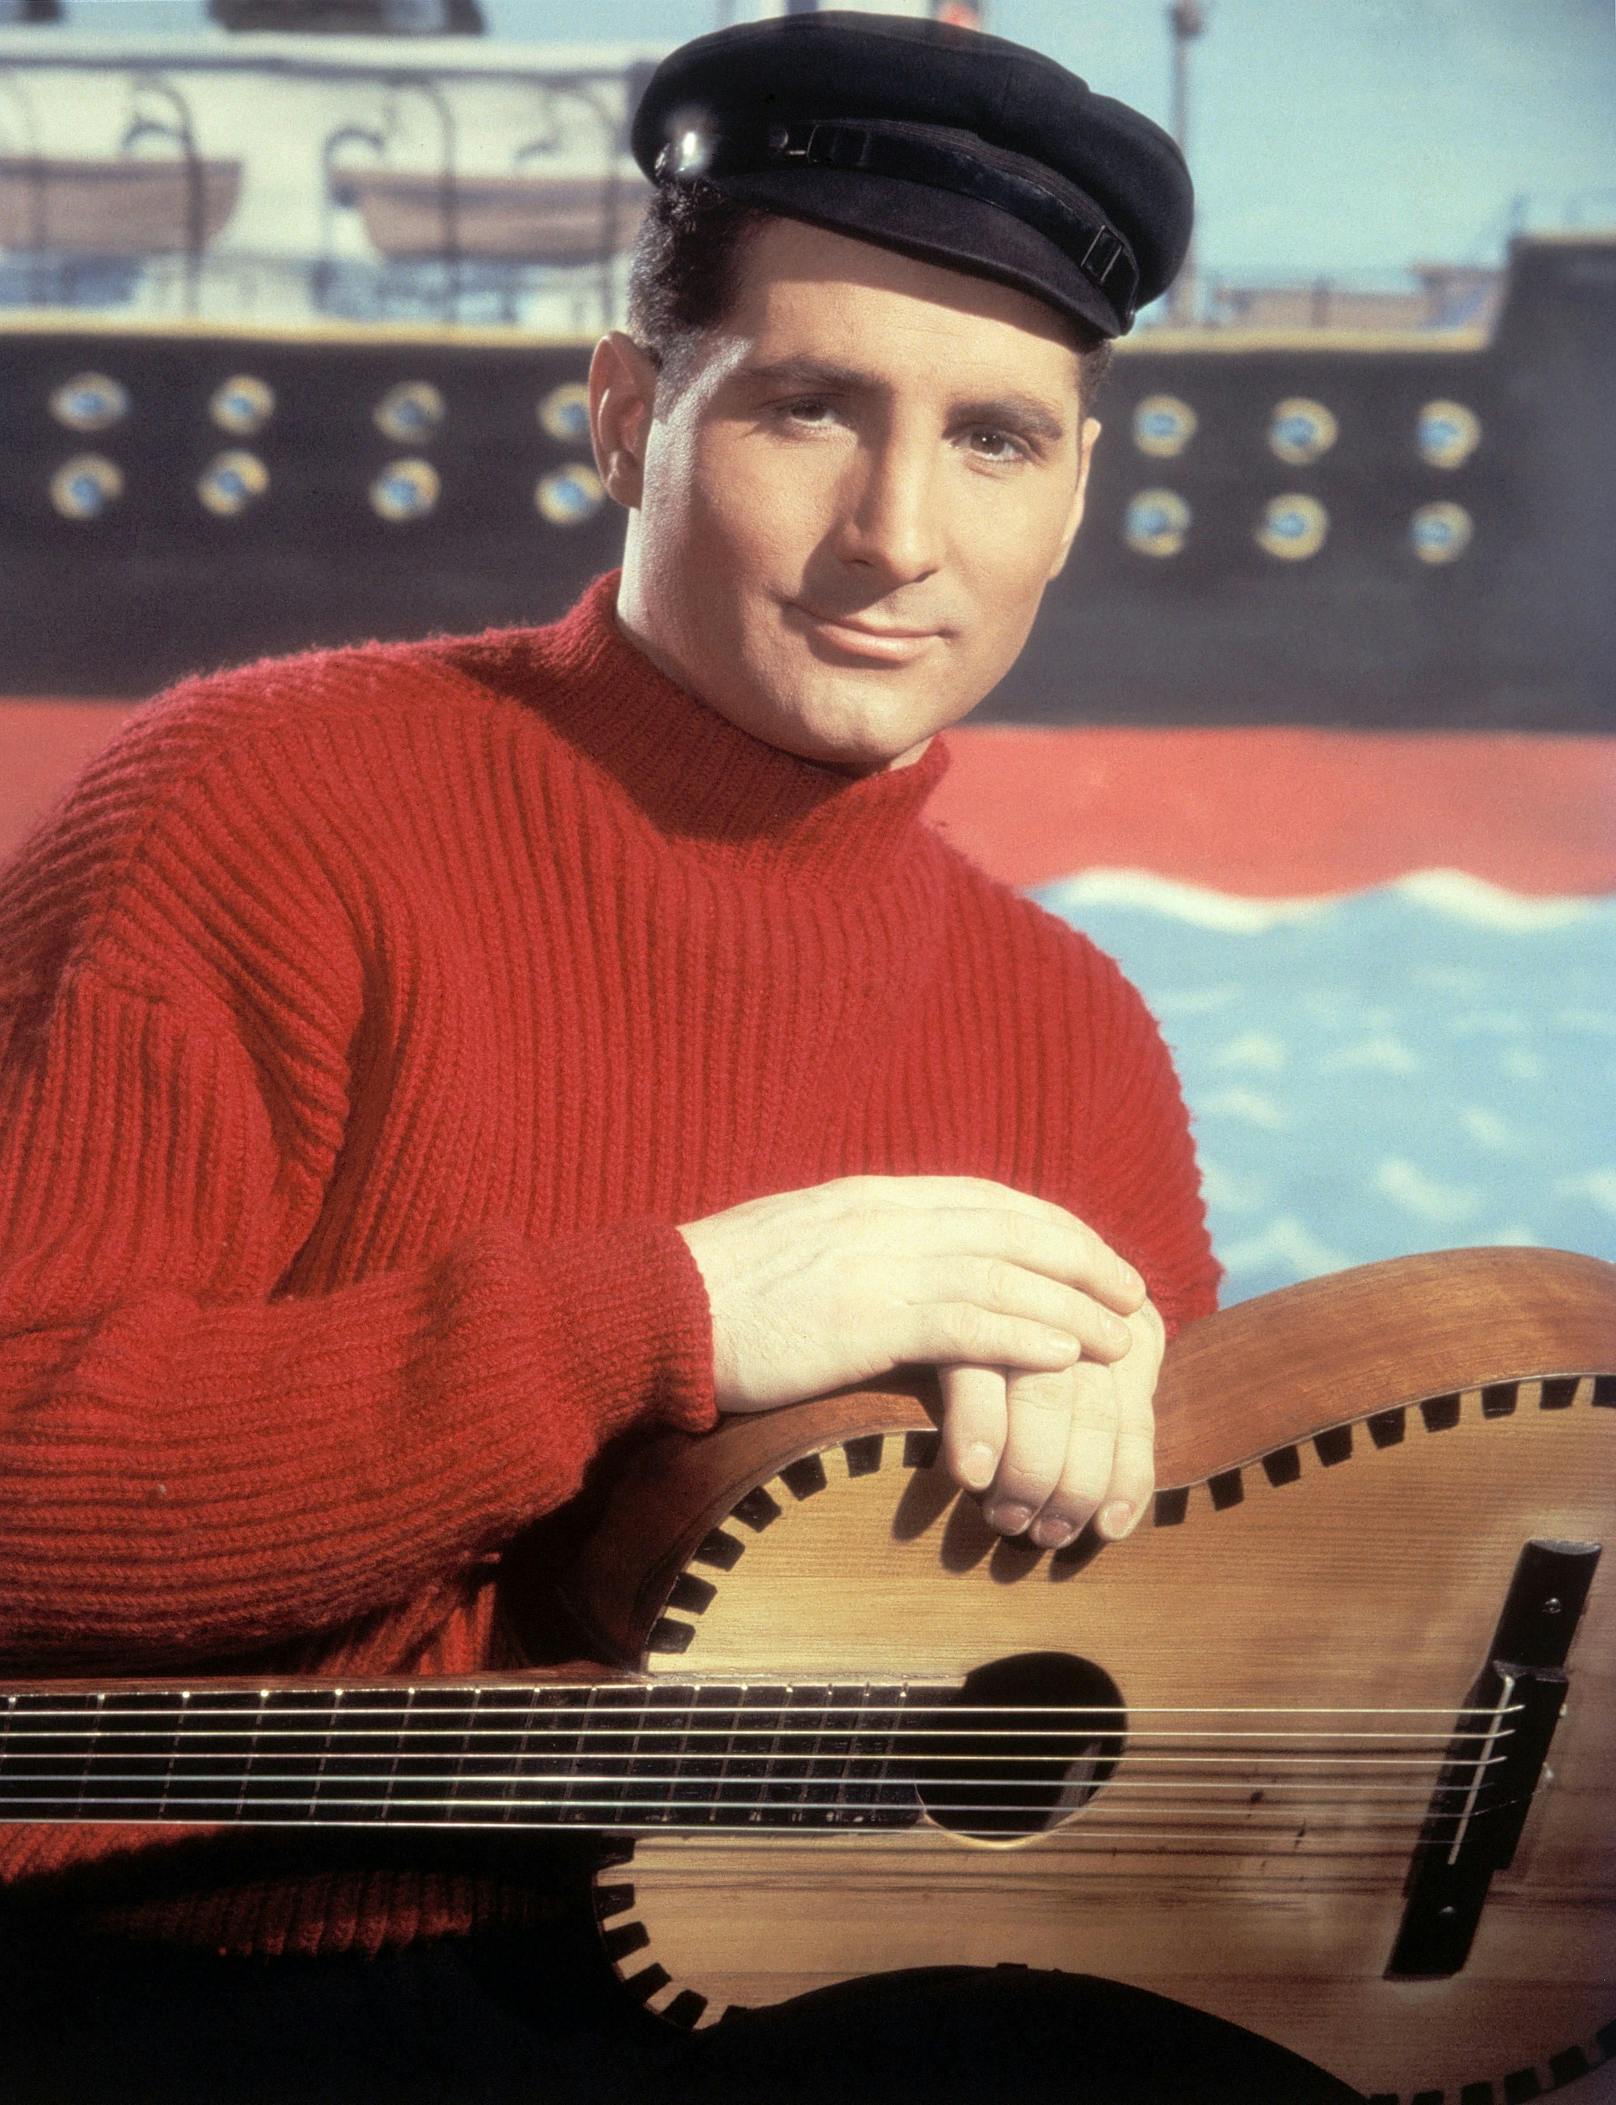 Zwischen&nbsp;1956 und 1966 hatte <strong>Freddy Quinn</strong> zehn Nummer-eins-Erfolge in den deutschen Charts (bis dato unerreicht!) und wurde zu dieser Zeit zum erfolgreichsten deutschsprachigen Sänger.